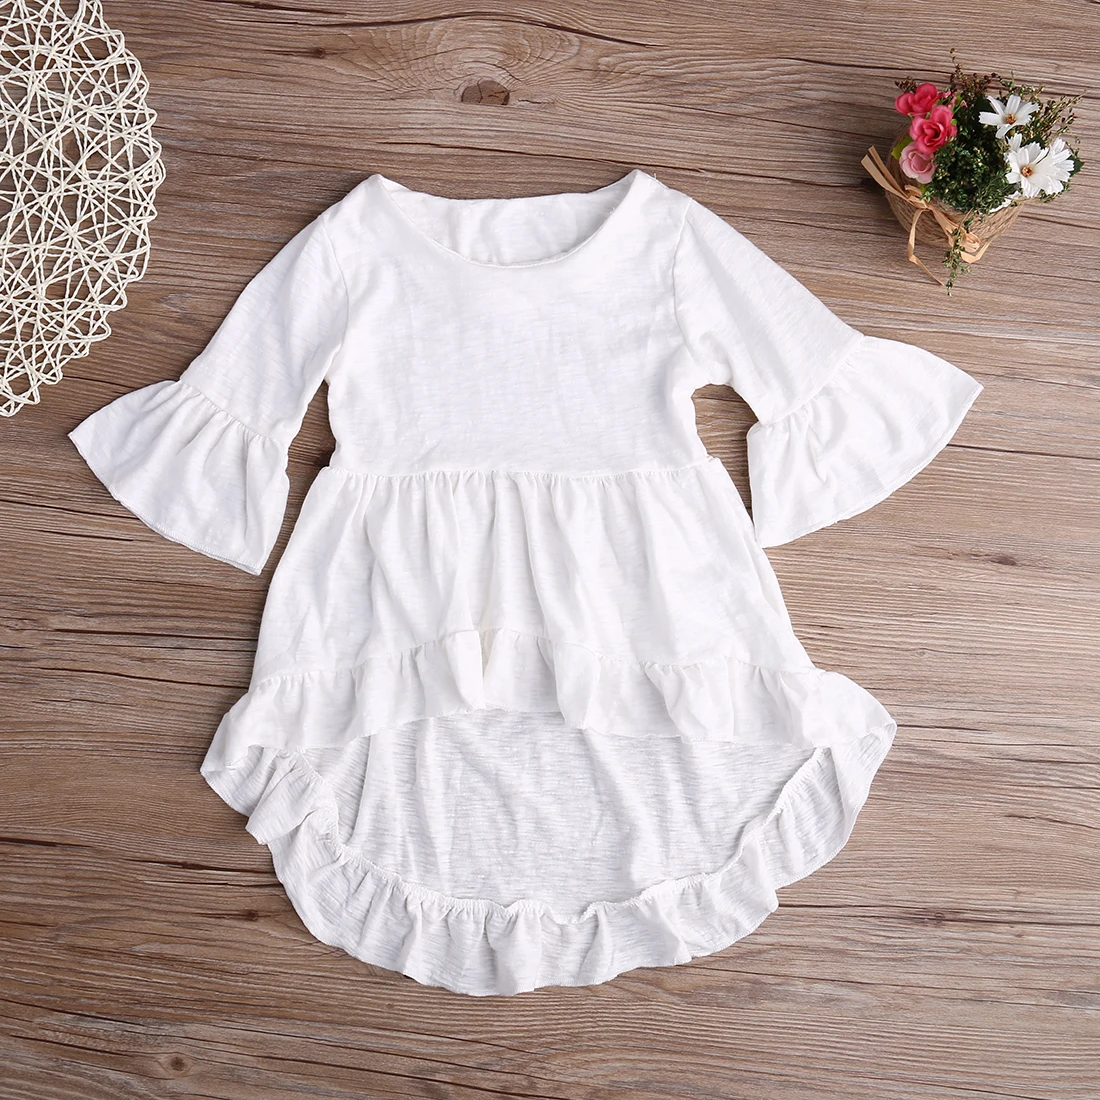 Летнее платье для маленьких девочек с оборками, расклешенный хлопковый белый топ с короткими рукавами, новая модная футболка вечерние с оборками